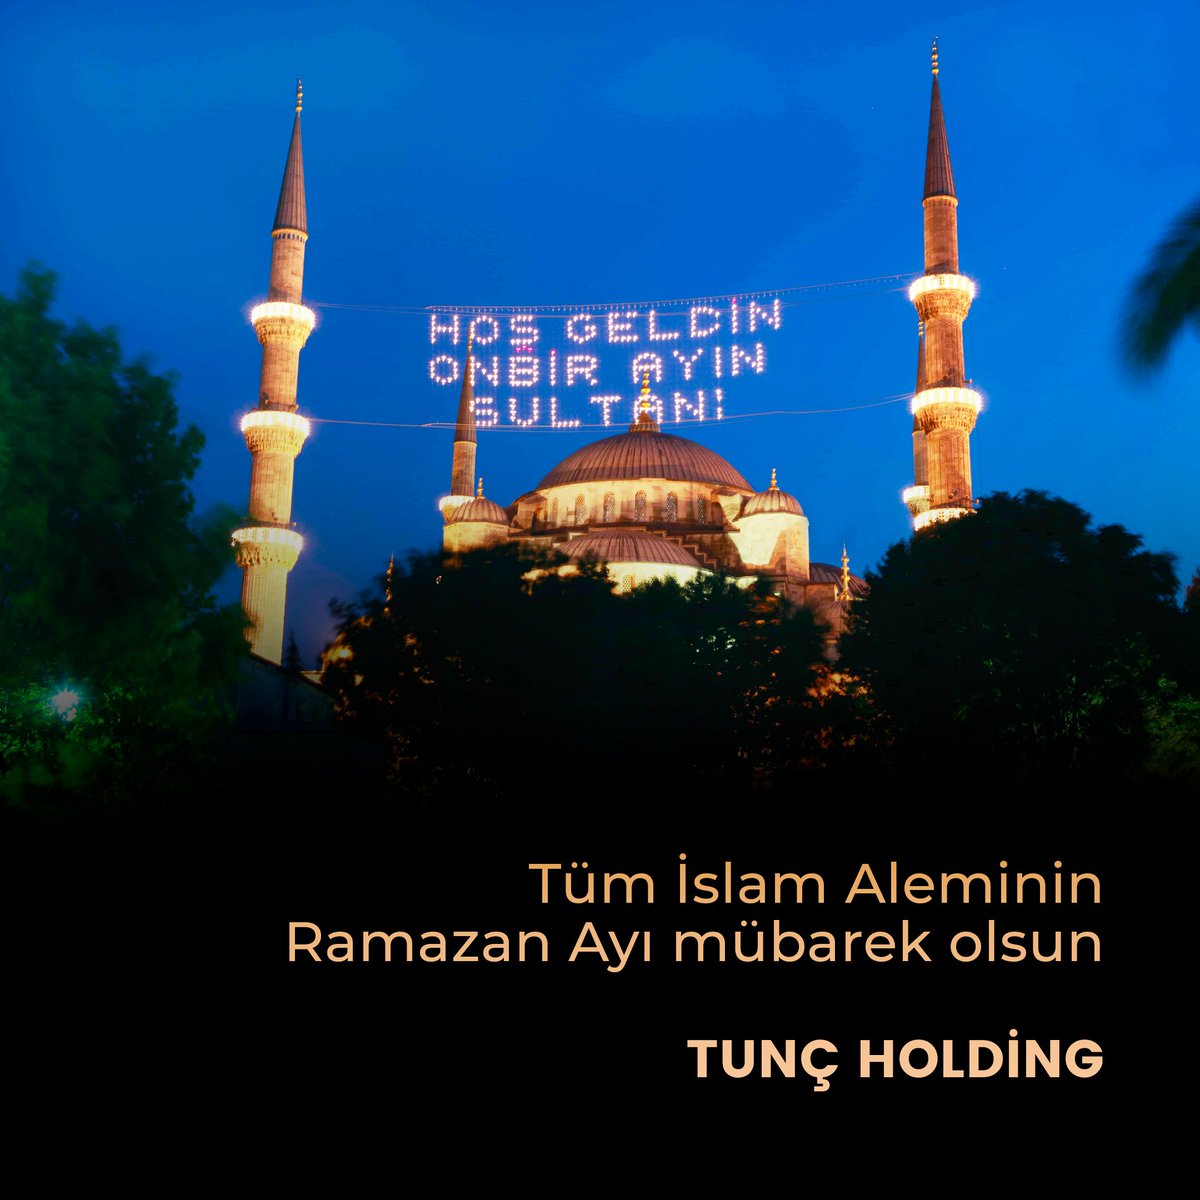 Tüm İslam Aleminin Ramazan Ayı mübarek olsun.